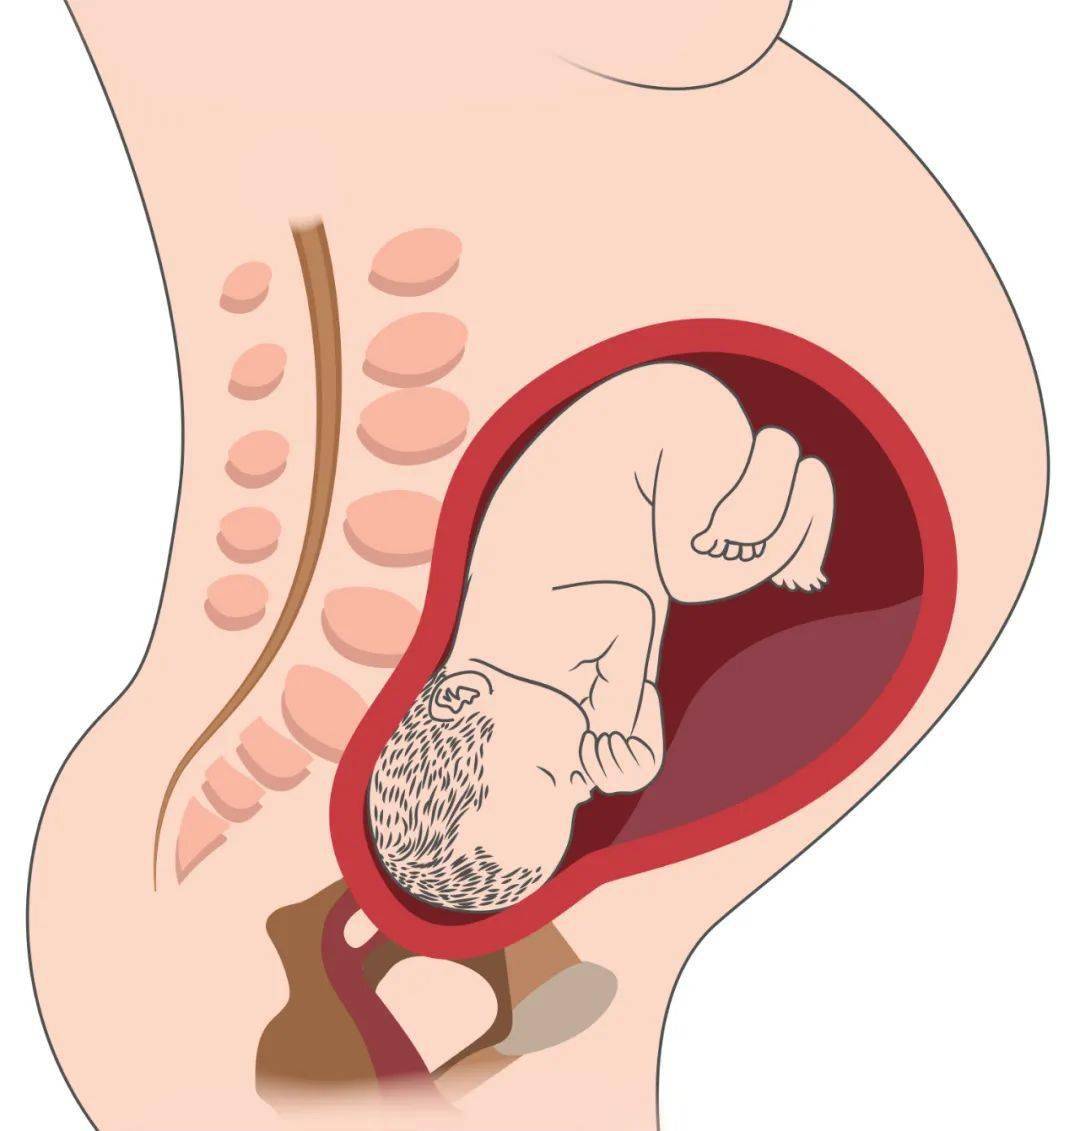 怀孕后期,胎儿的头部开始通过骨盆入口进入骨盆腔